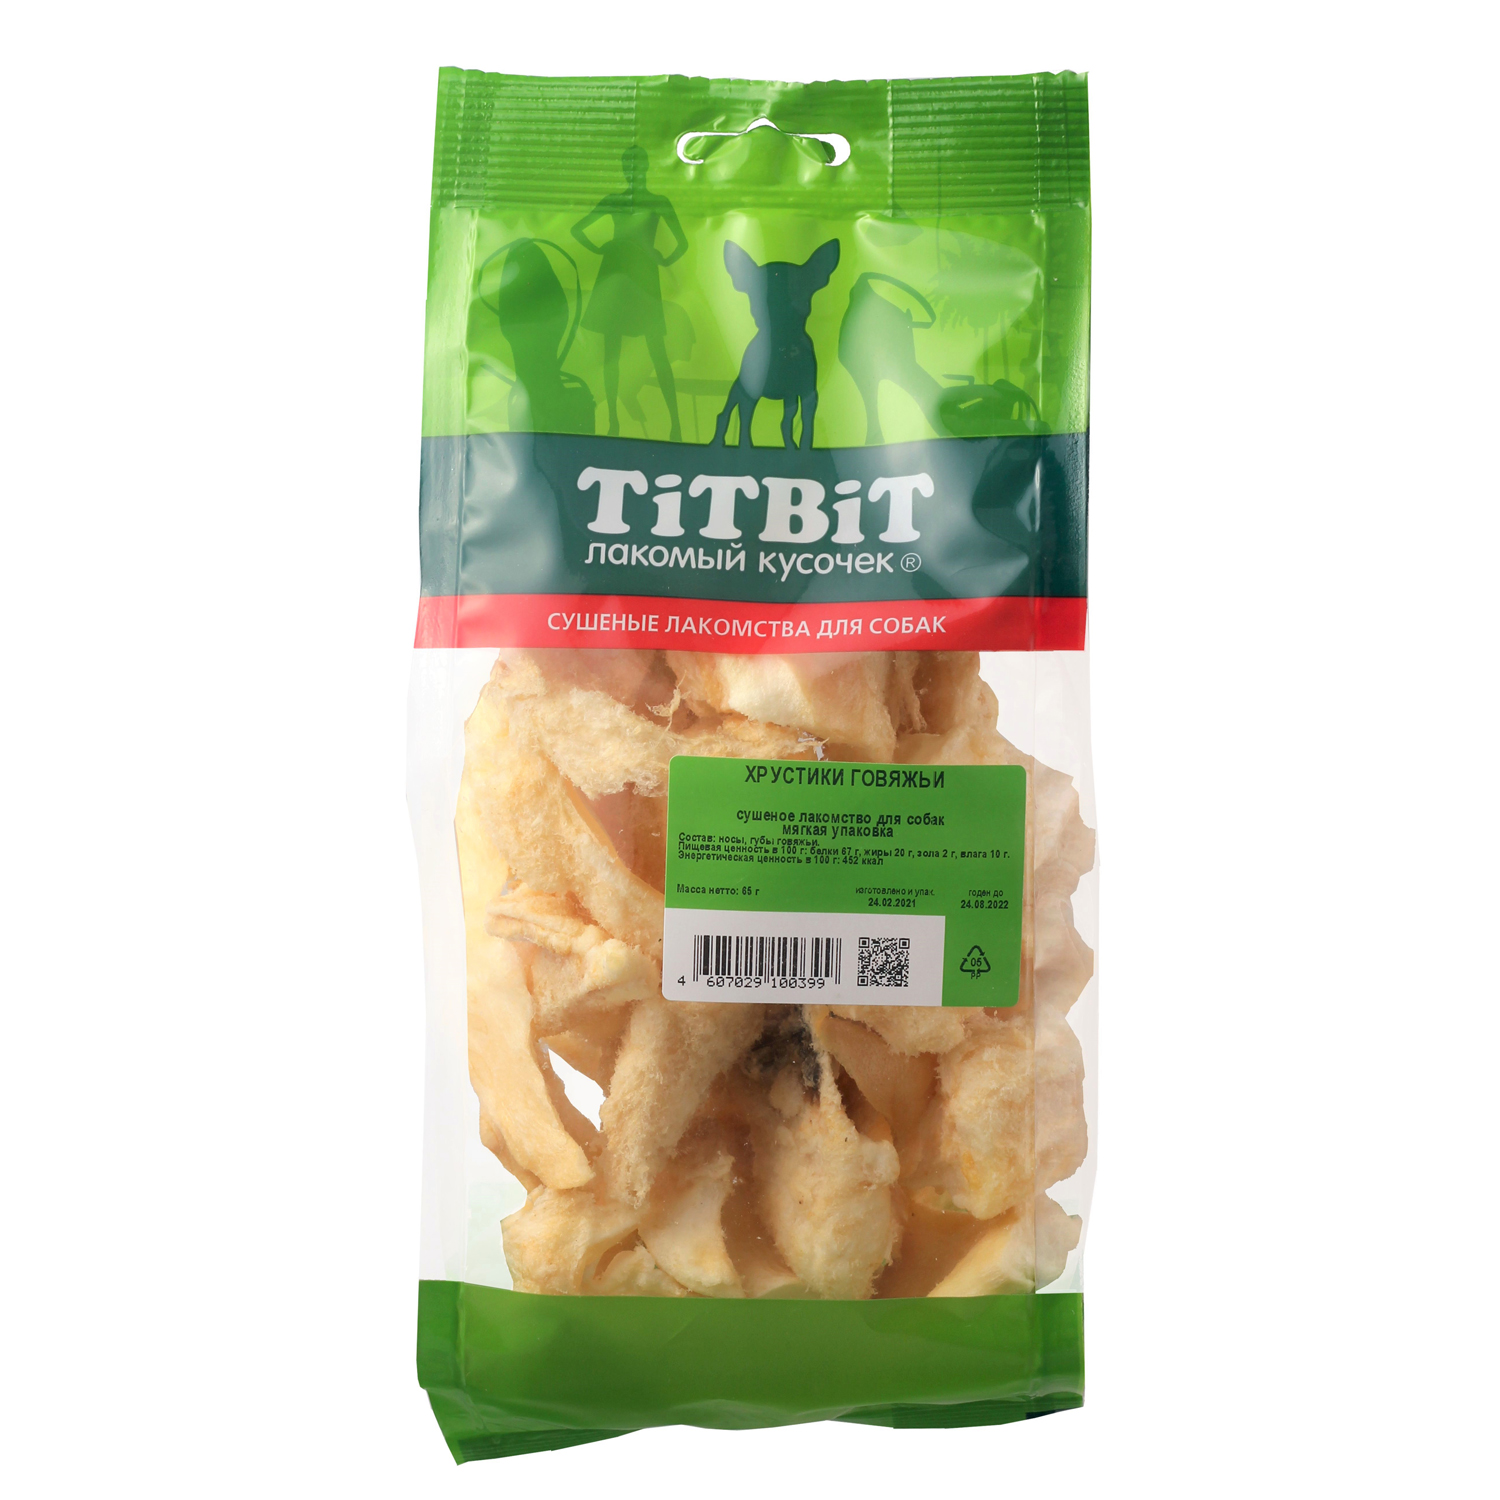 TitBit Хрустики говяжьи мягкая упак д/соб 65 г